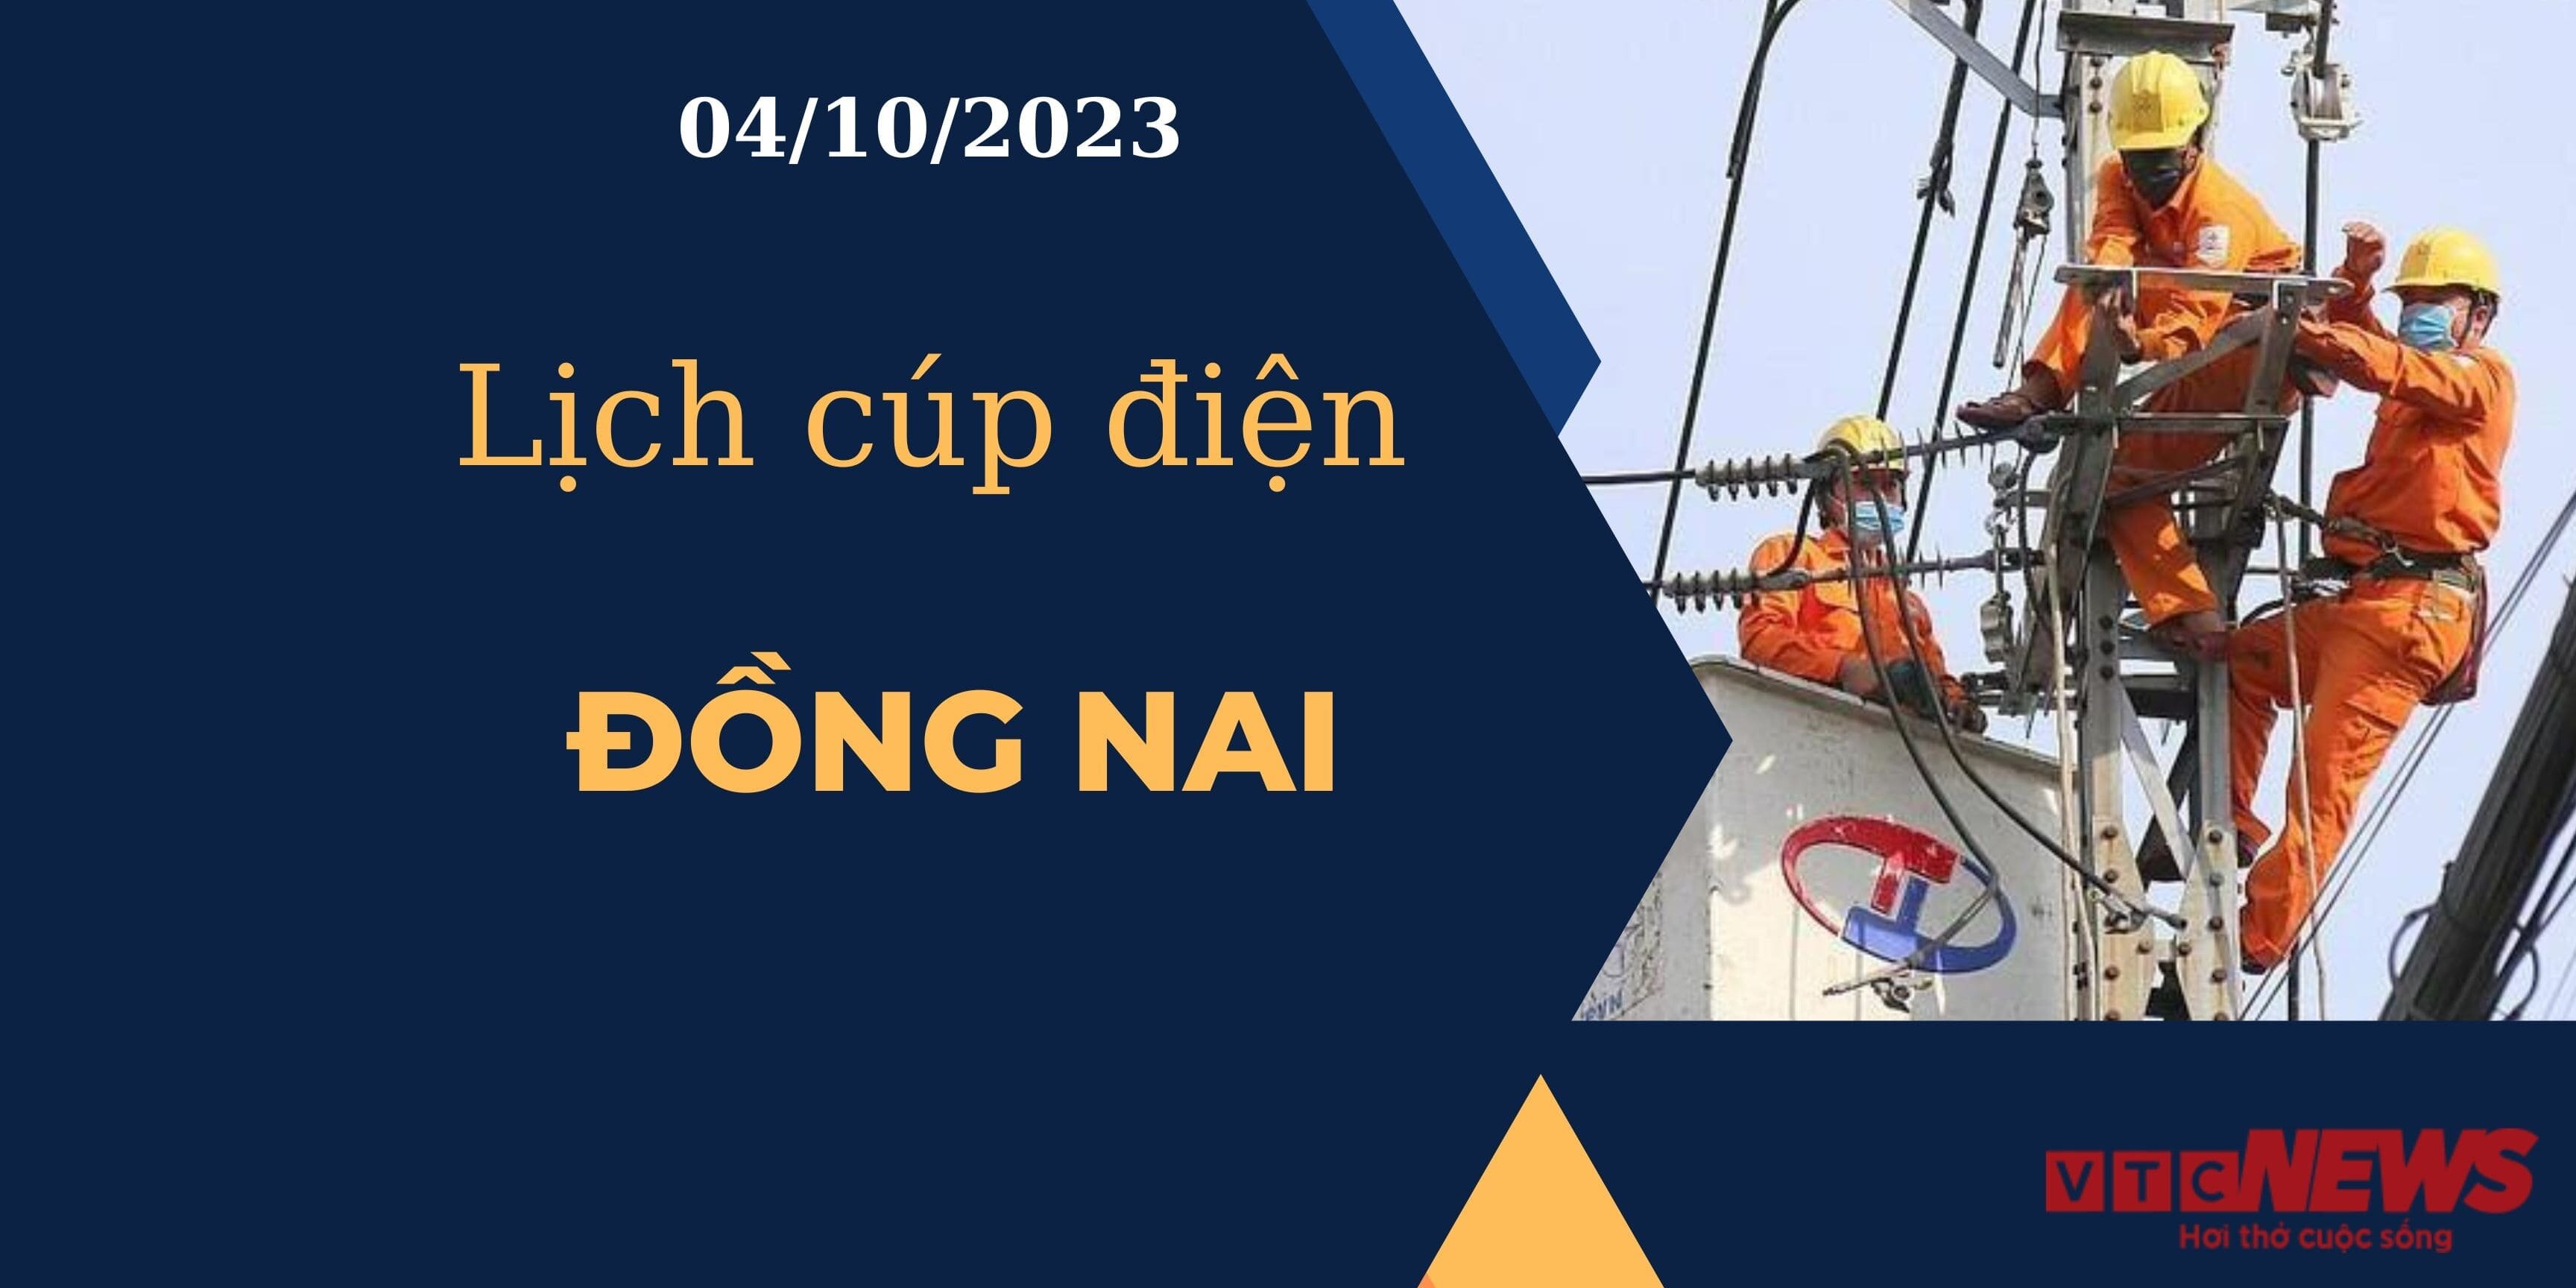 Lịch cúp điện hôm nay ngày 04/10/2023 tại Đồng Nai